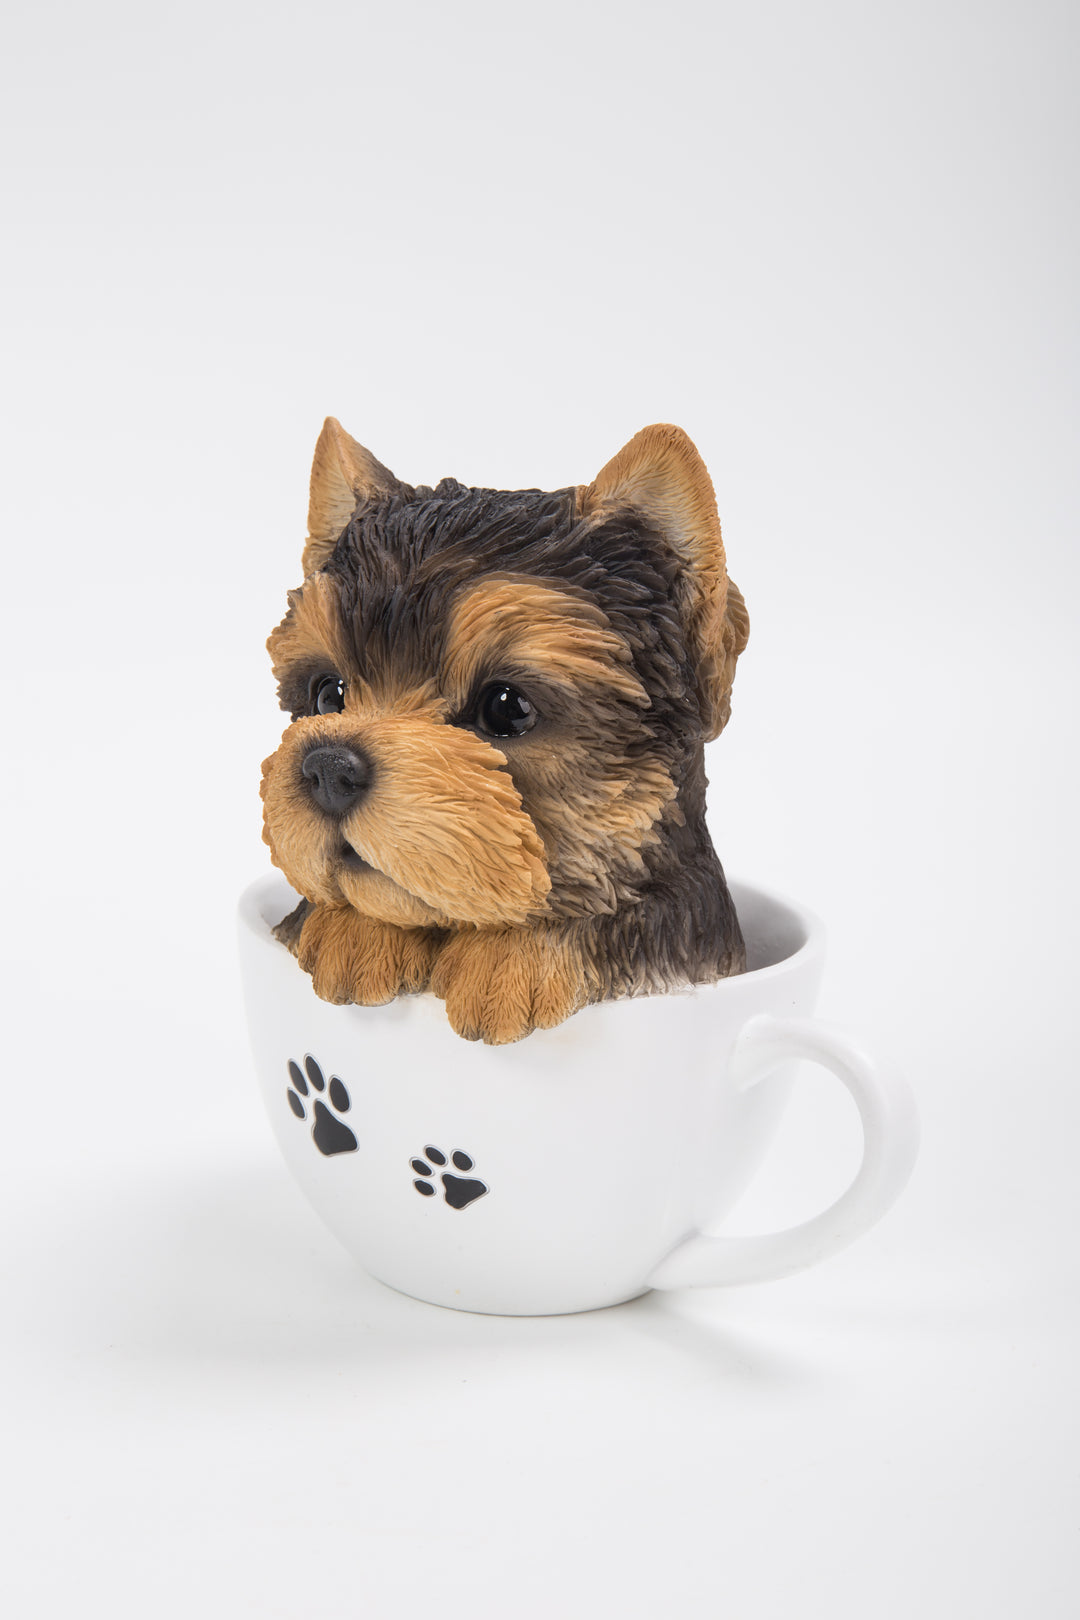 Pet Pals-Teacup Yorkshire Terrier Puppy Statue HI-LINE GIFT LTD.